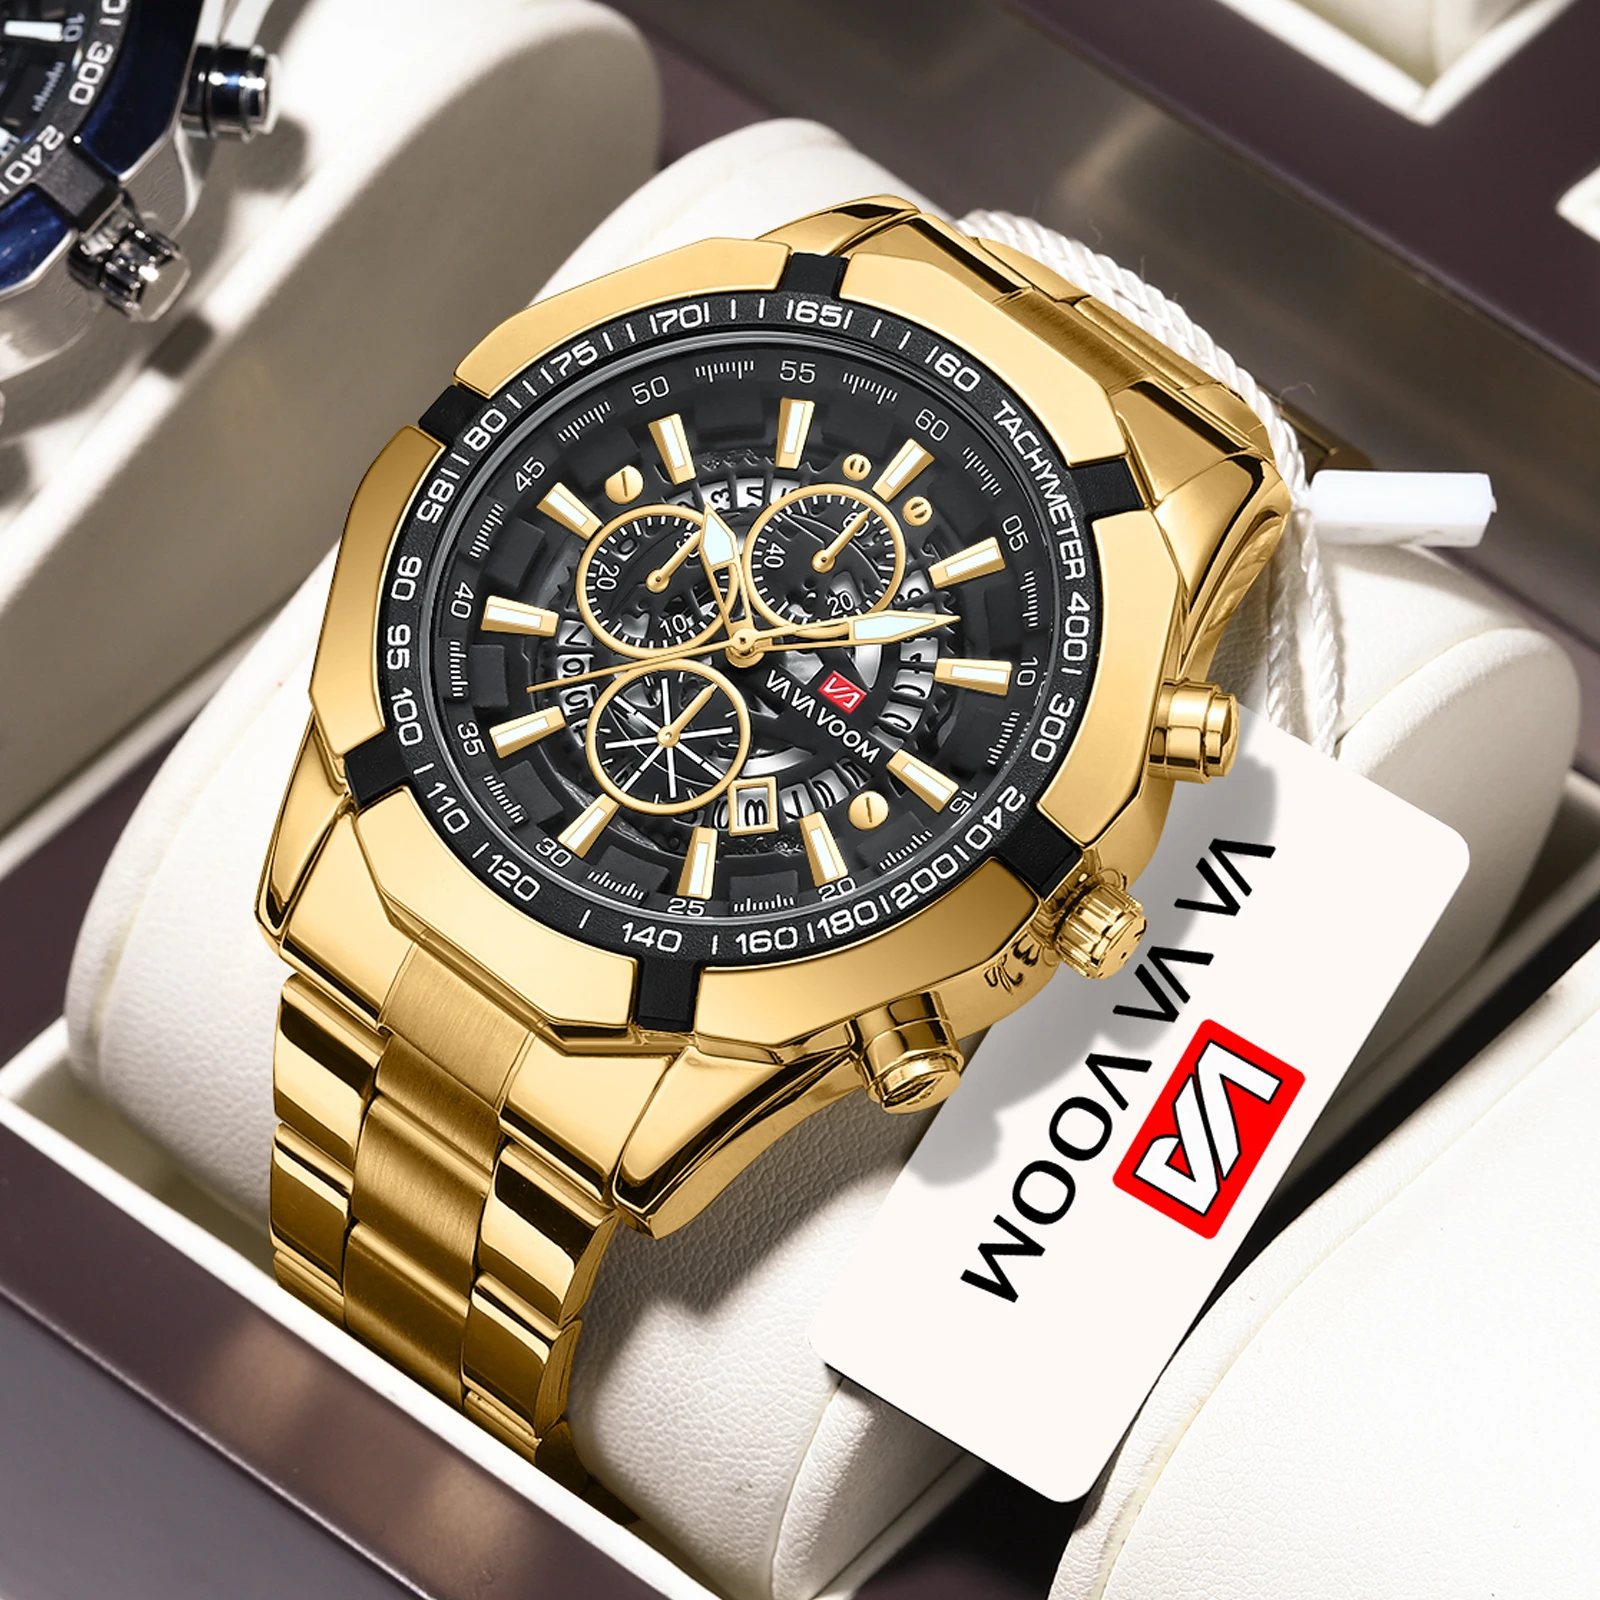 

VA VA Voom Luxury Brand Watch Men's Analog All steel Quartz Men's Watch Business Men's Watch Men's Watch Men's Relay